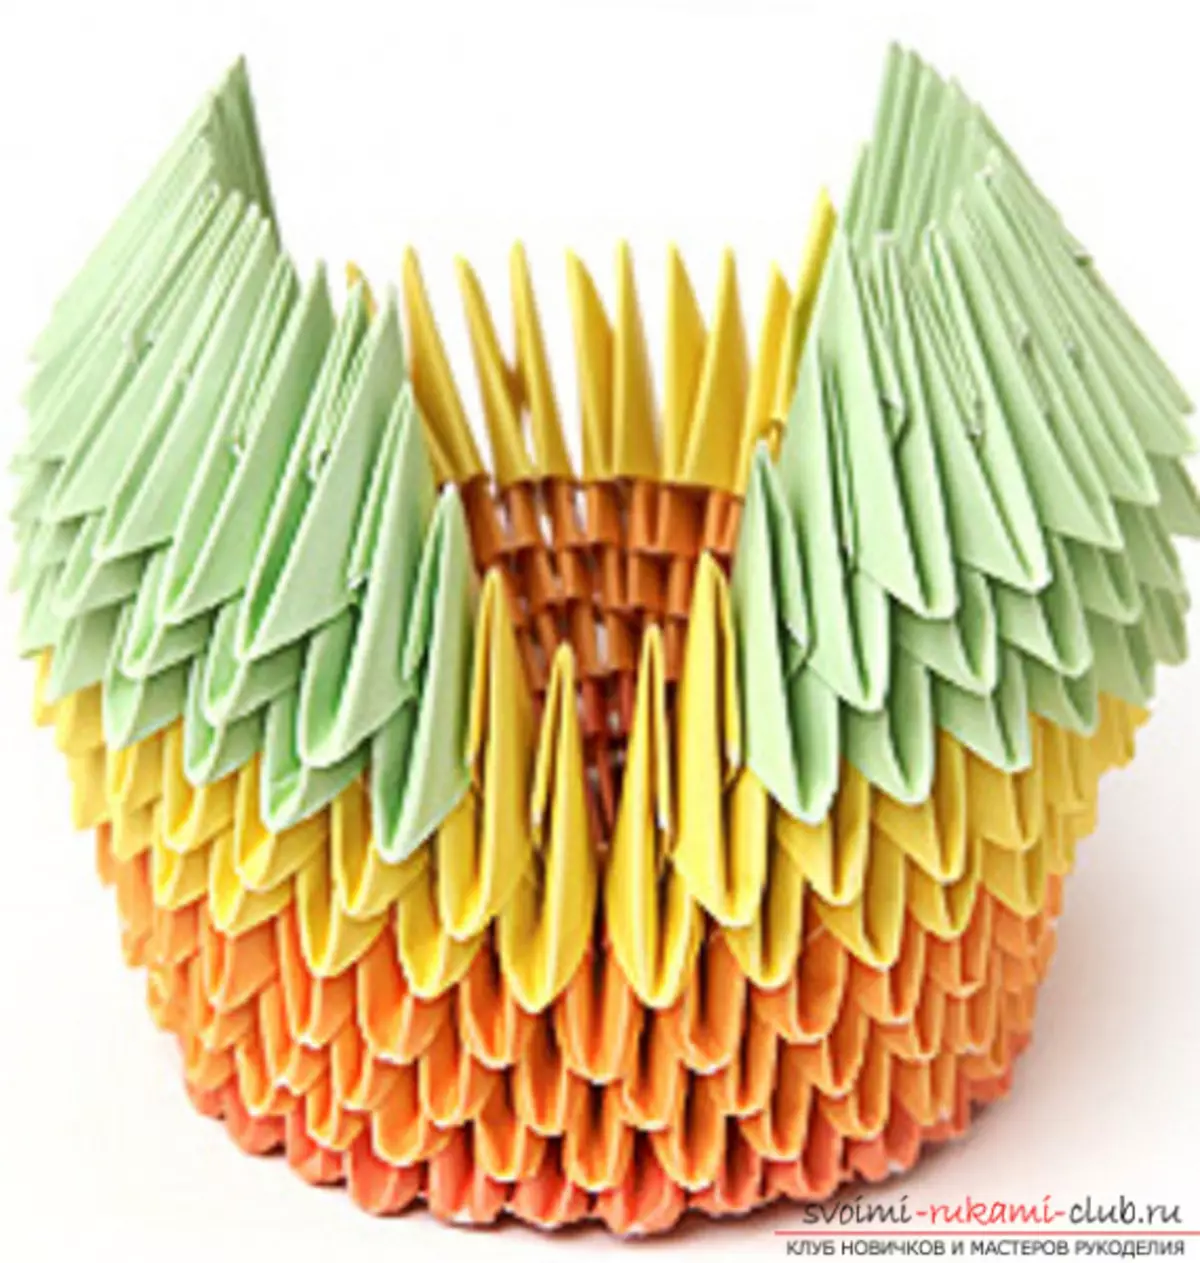 LEBED Origami van PAPIER: Hoe stap voor stap te zetten met foto's en video